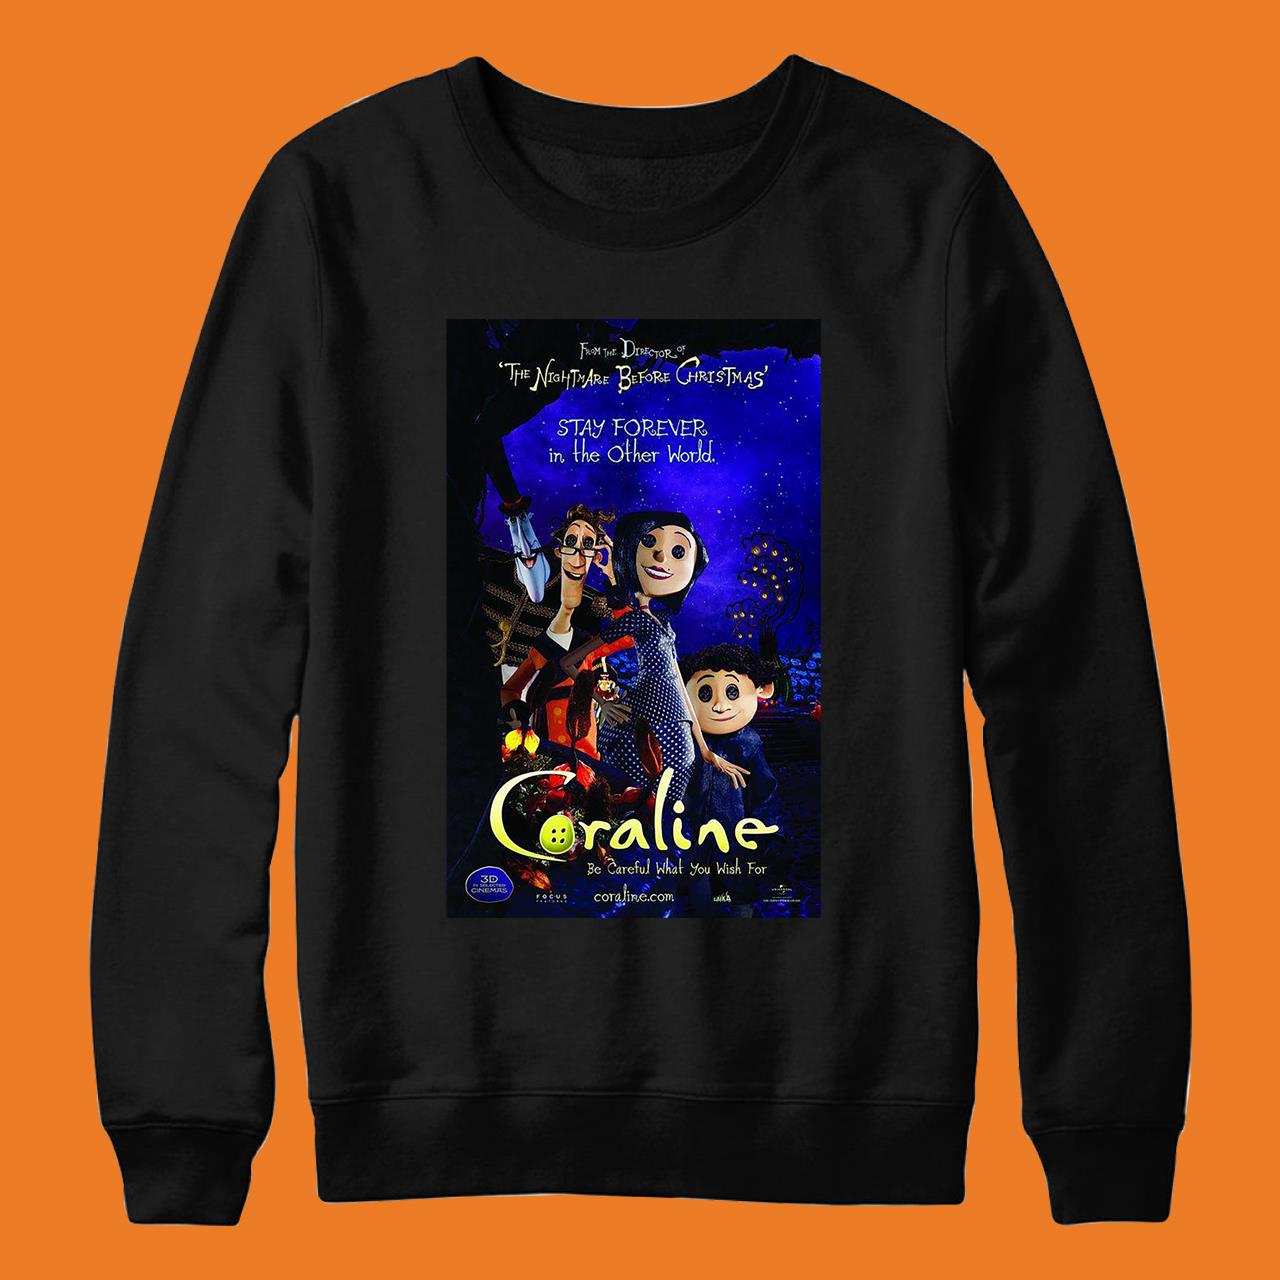 Coraline Movie Classic T-Shirt